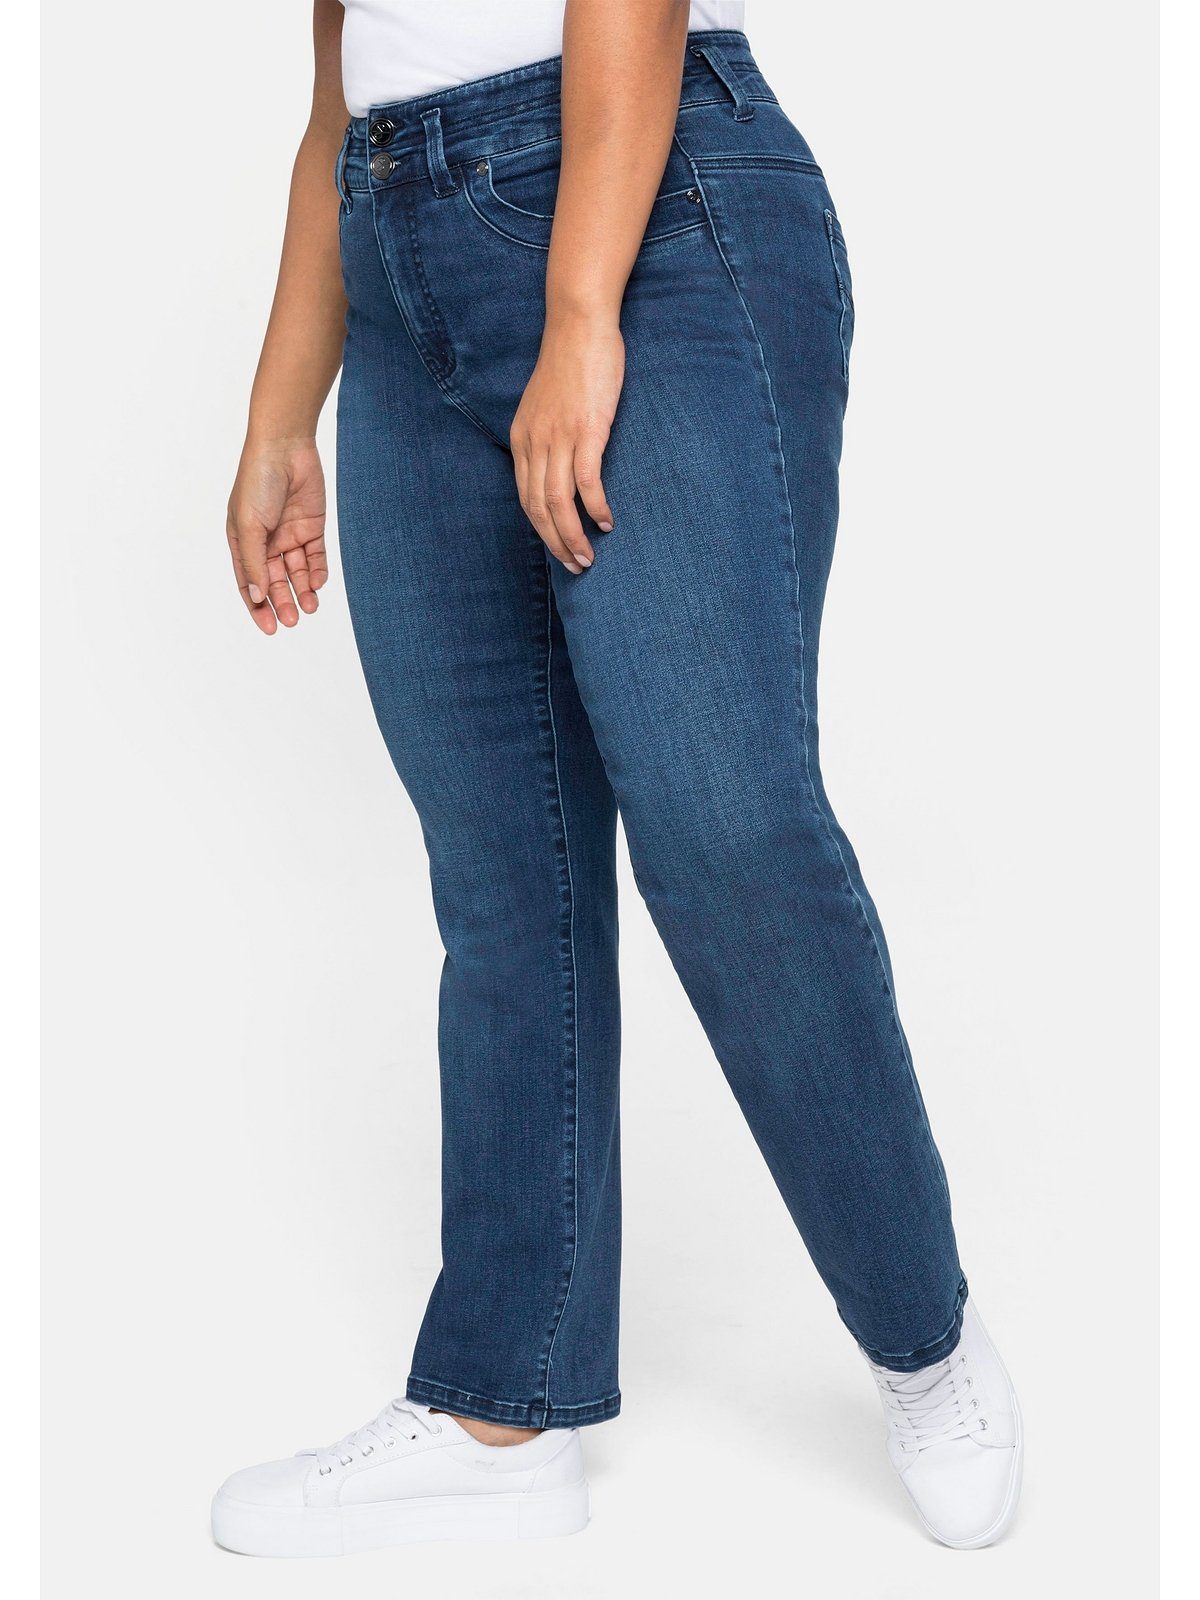 eine und Größen für Sheego MANUELA schmale kräftige Taille Oberschenkel Gerade Jeans Große